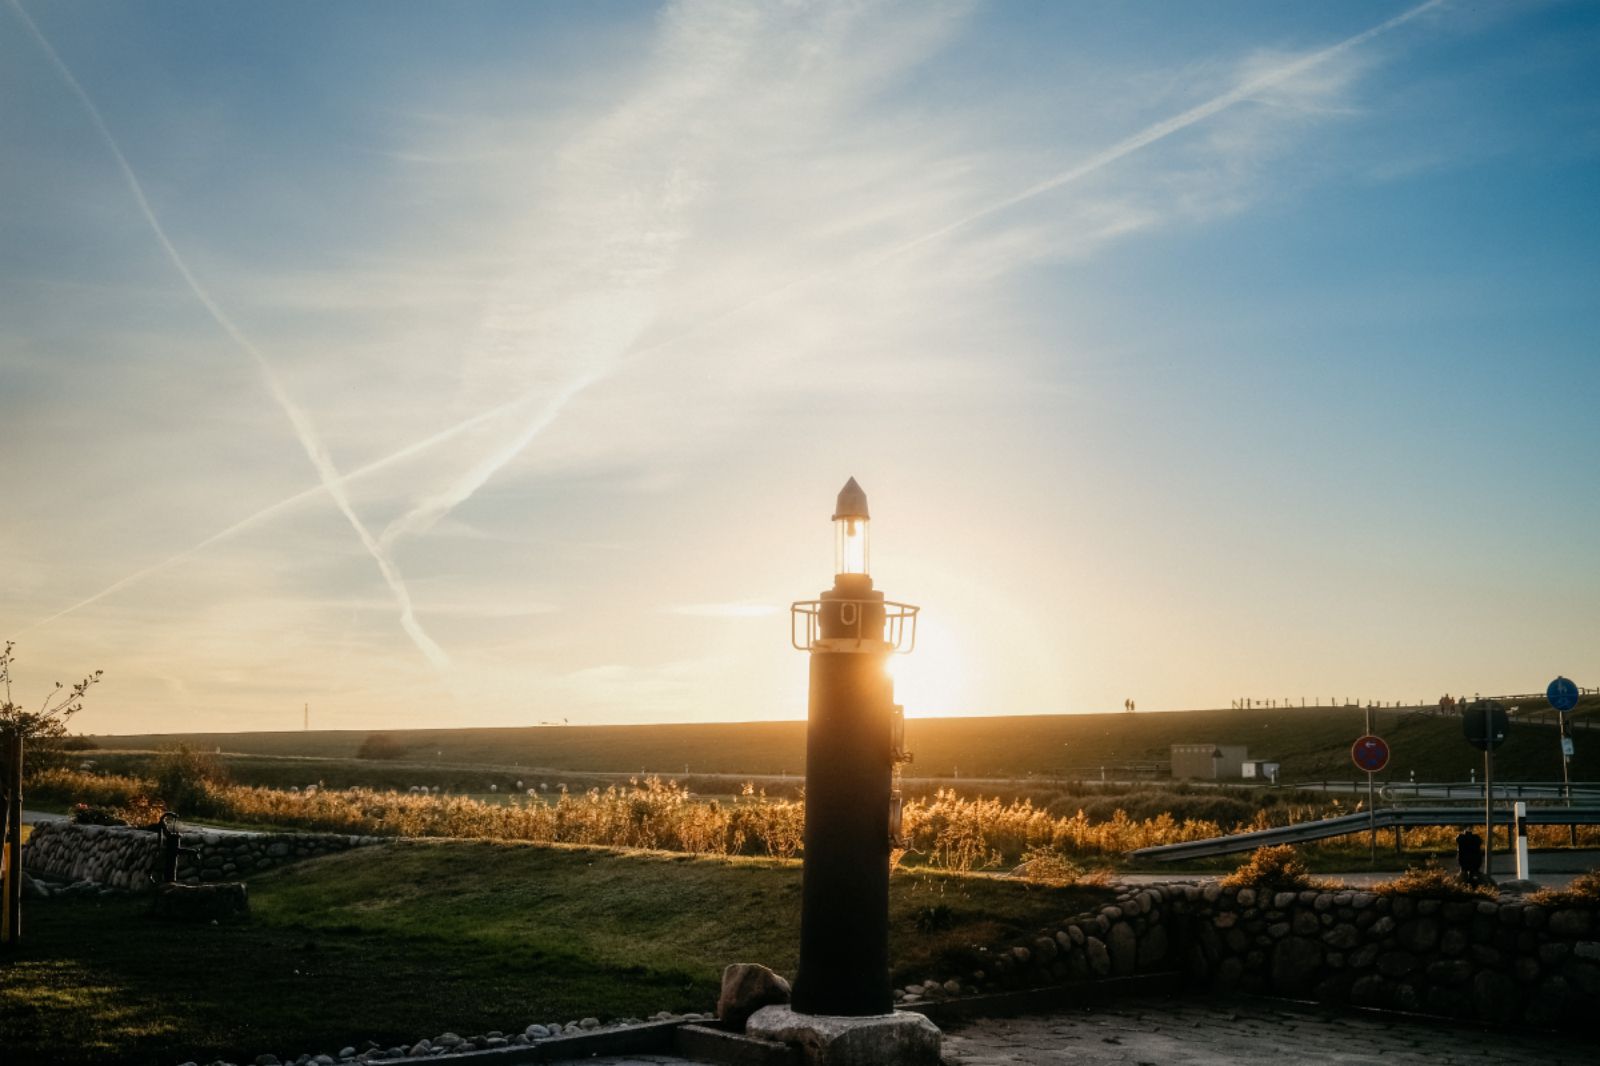 Entspannter Urlaub an der Nordseeküste auf Nordstrand. Eigener Mini-Leuchtturm im Sonnenaufgang hinterm Deich. Fynn Kliemann renoviert mit LDGG Häuser und verkauft das Interior im Onlineshop.